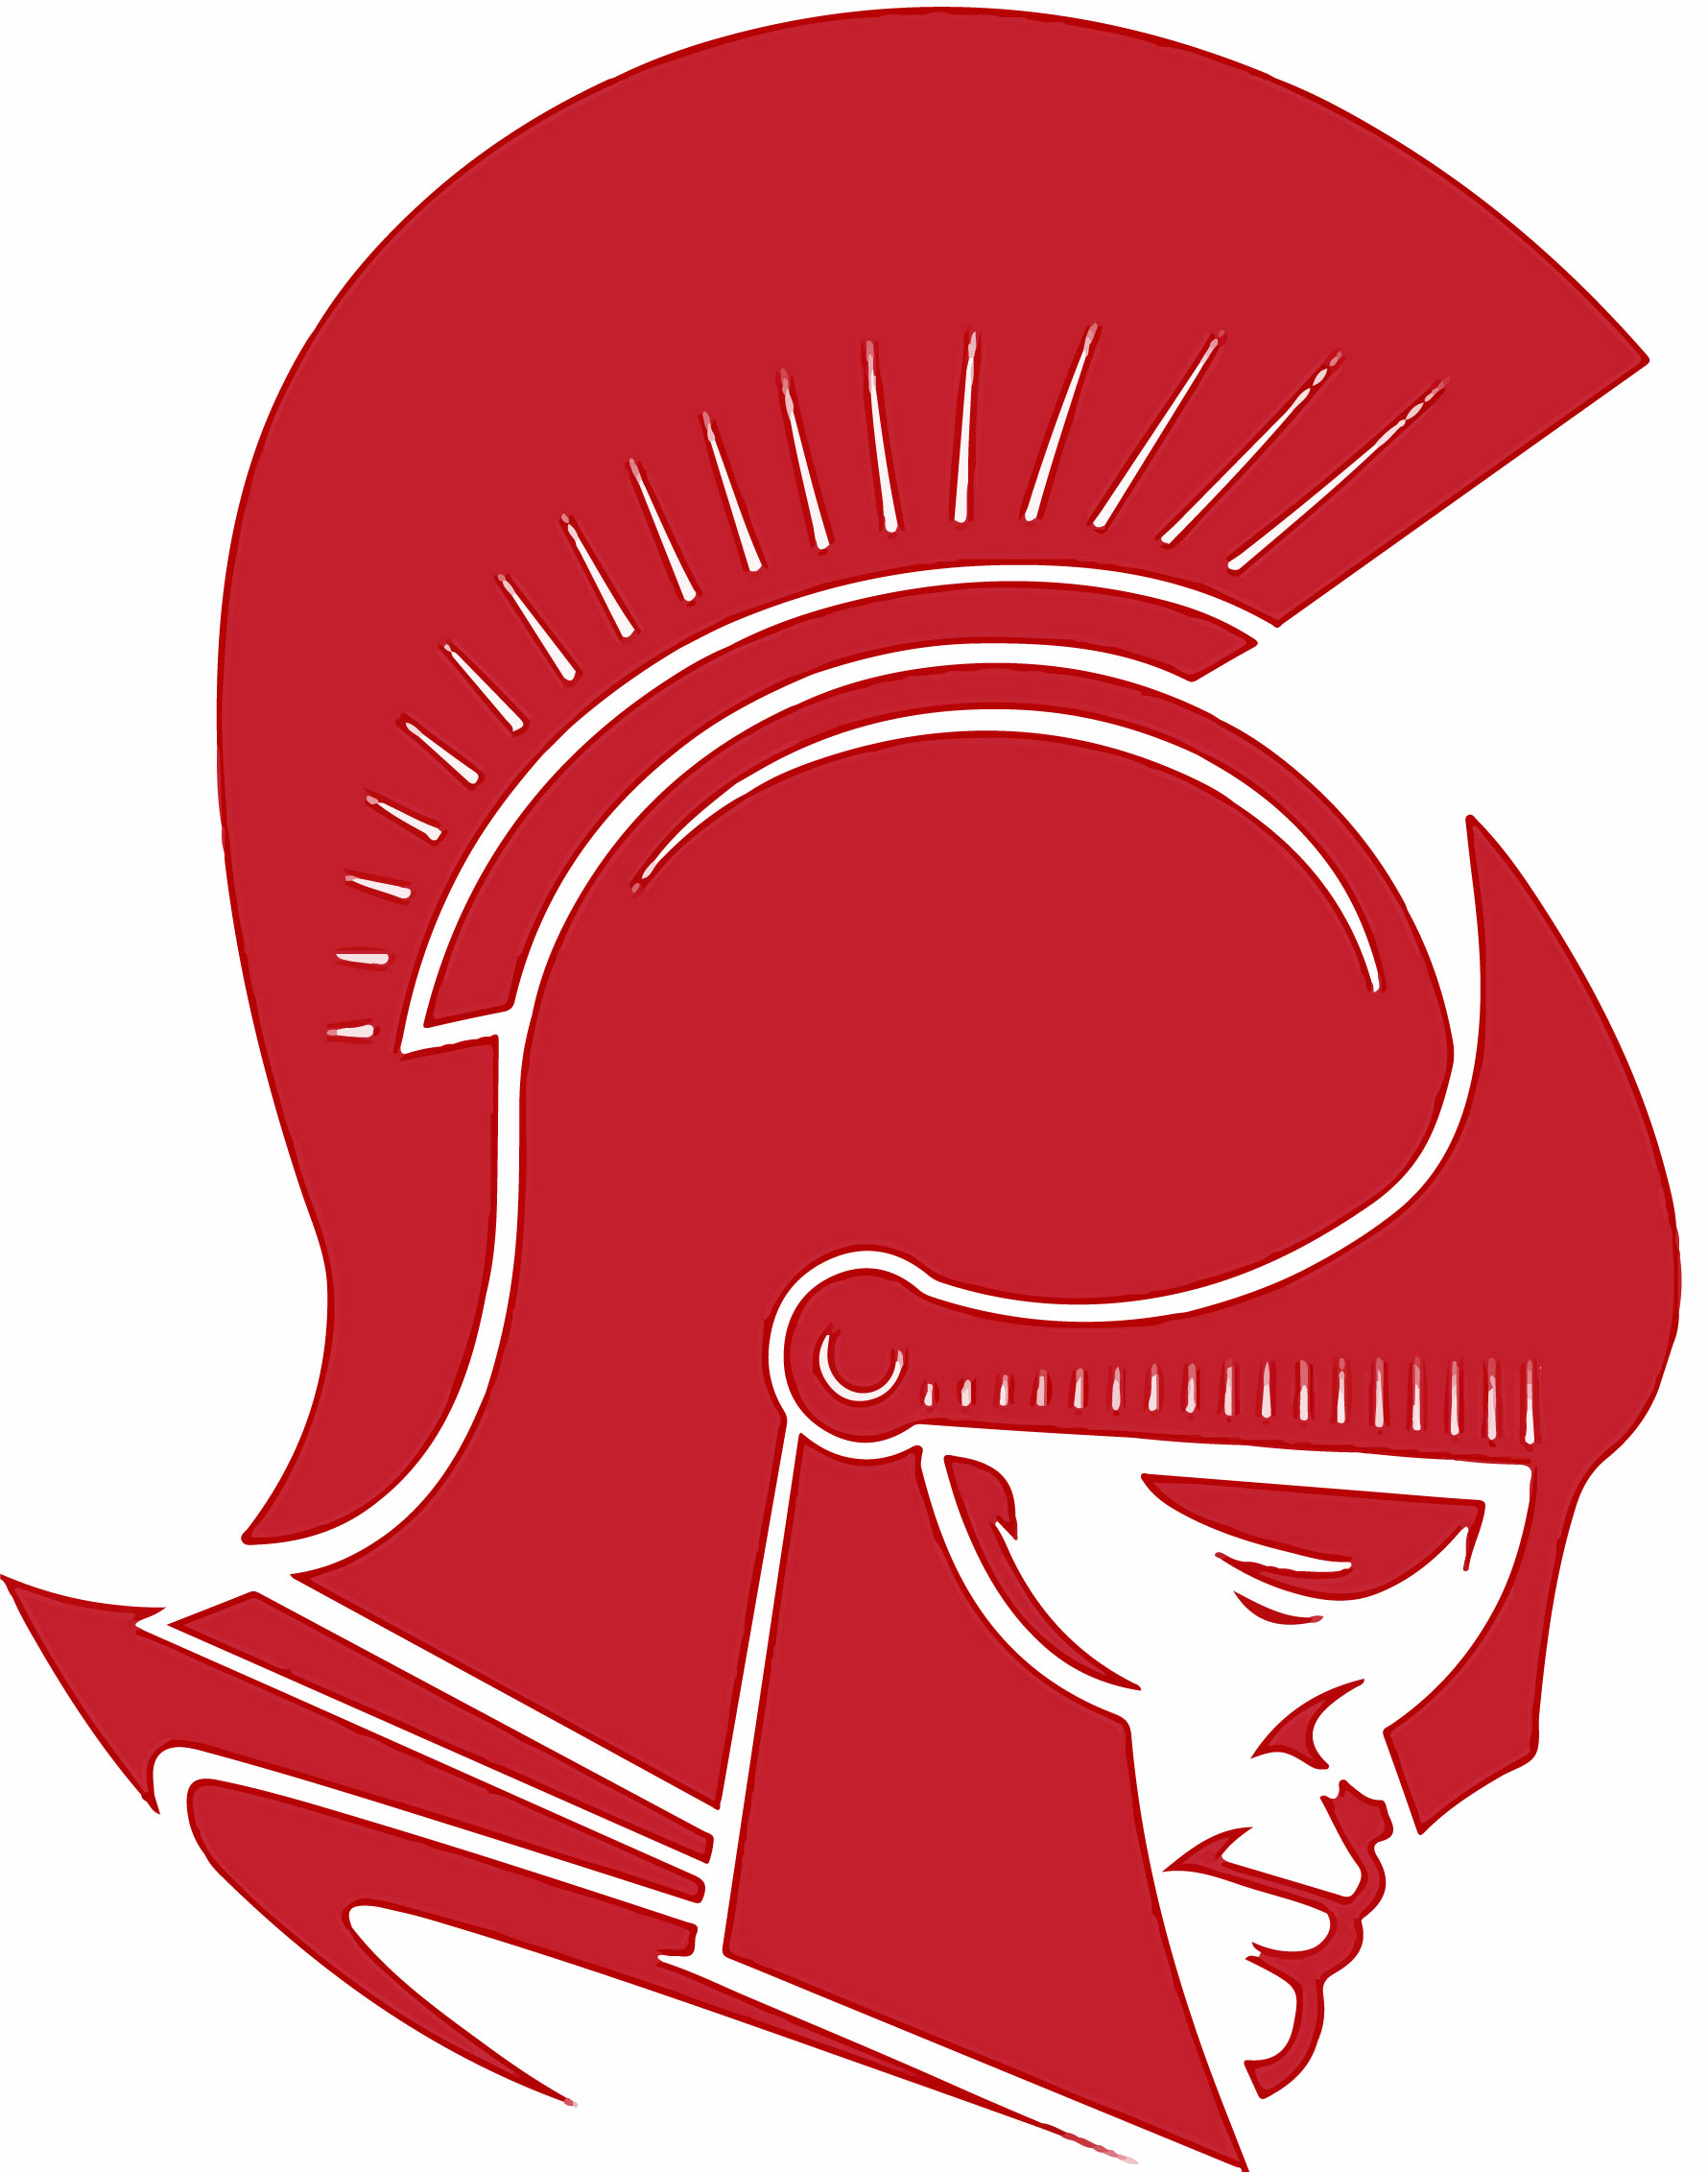 Hannibal-LaGrange University logo